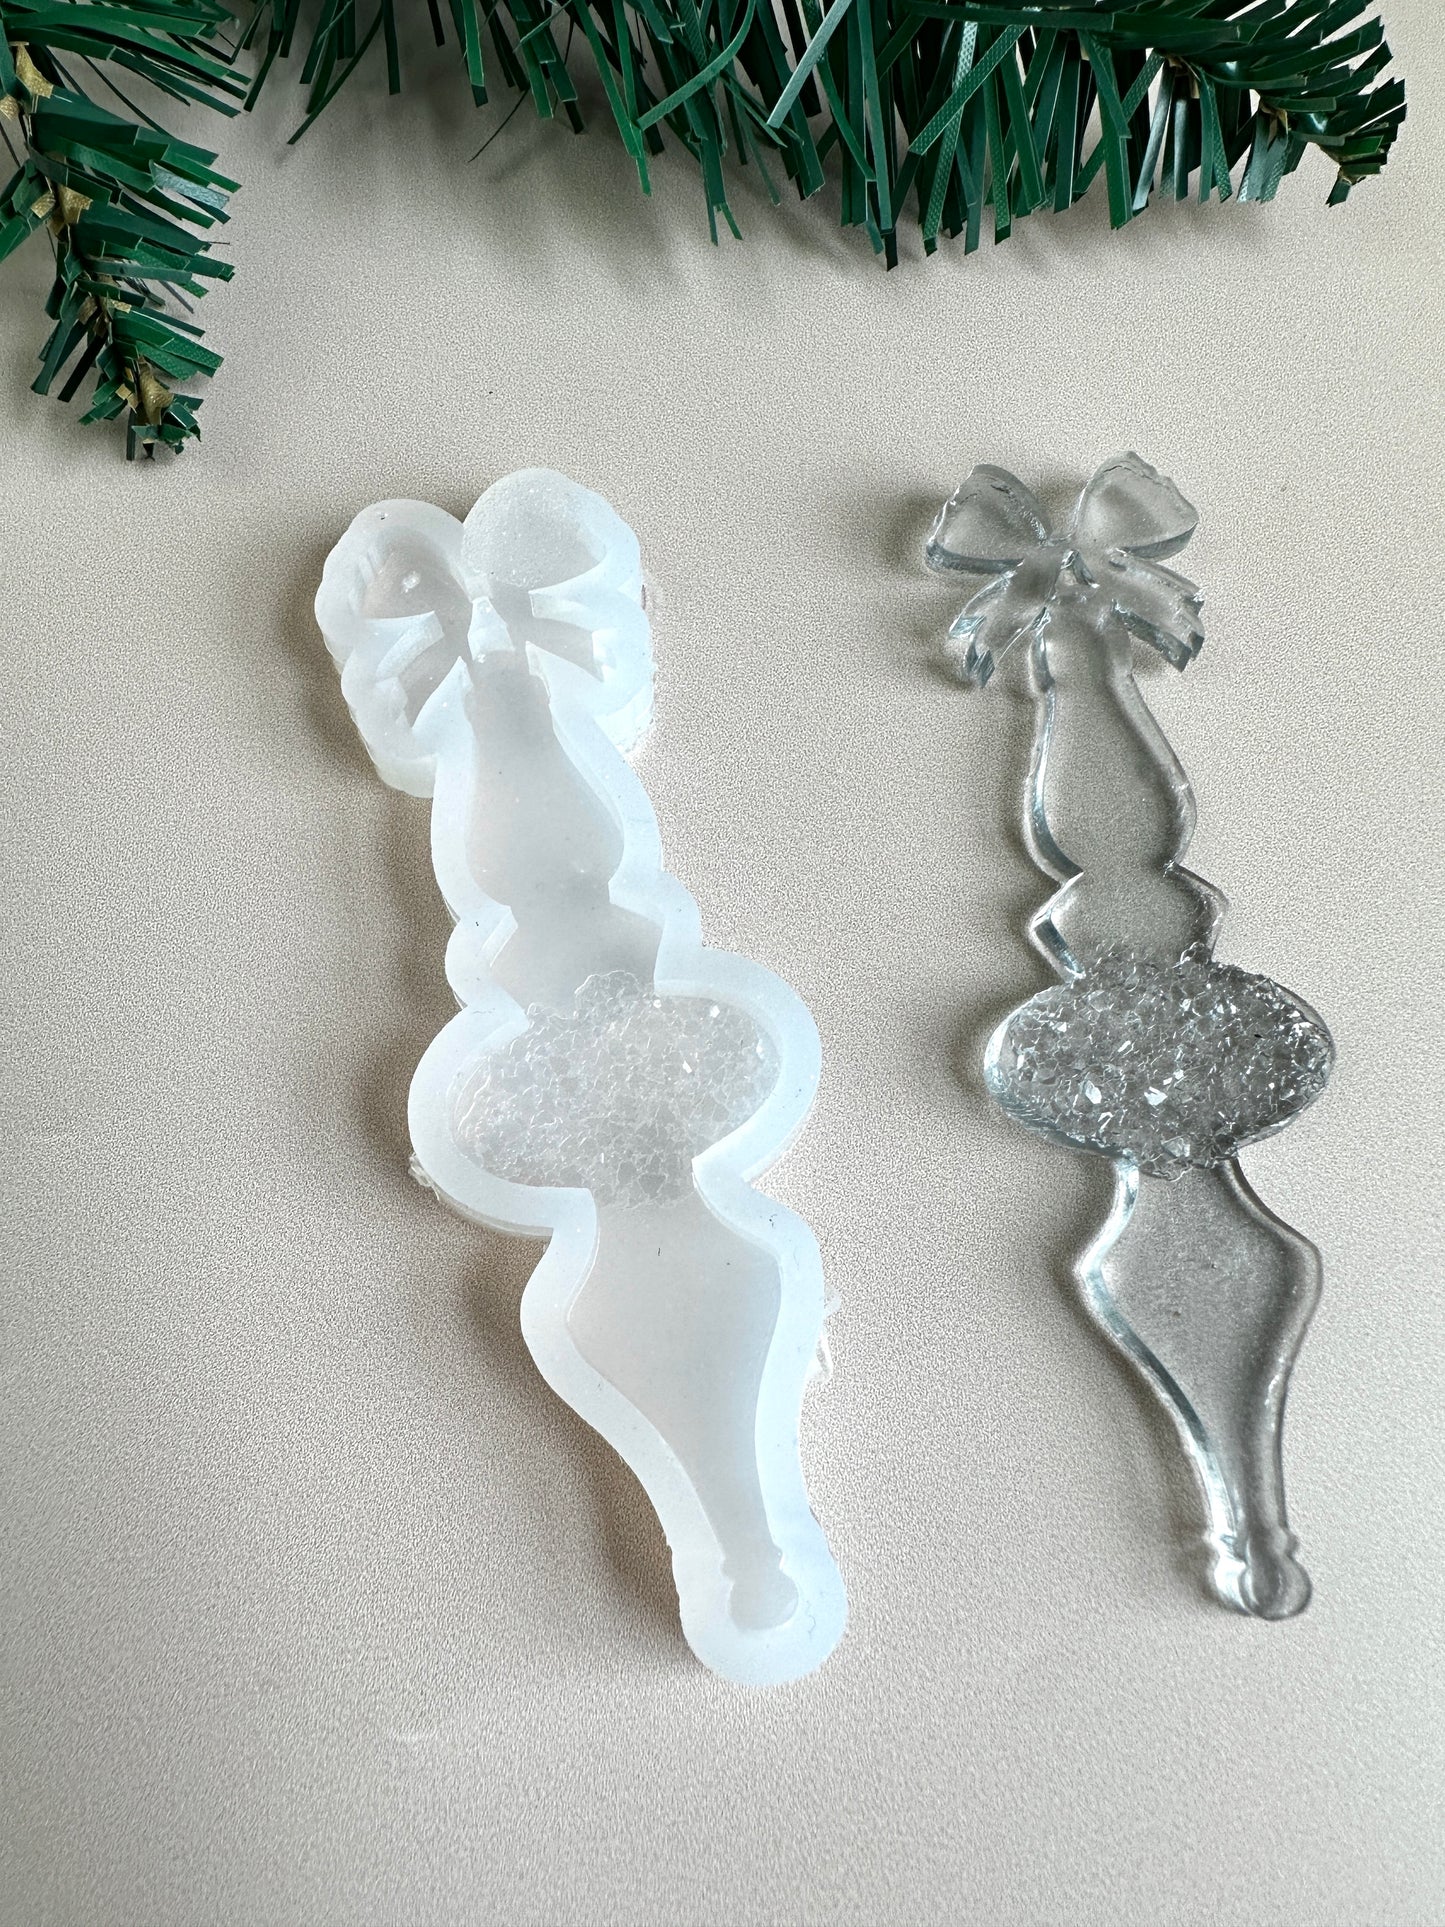 Силиконовая форма для украшения рождественской елки, сверкающие кристаллы в дизайне свечей, идеально подходит для Рождества, уникальный подарок для художника